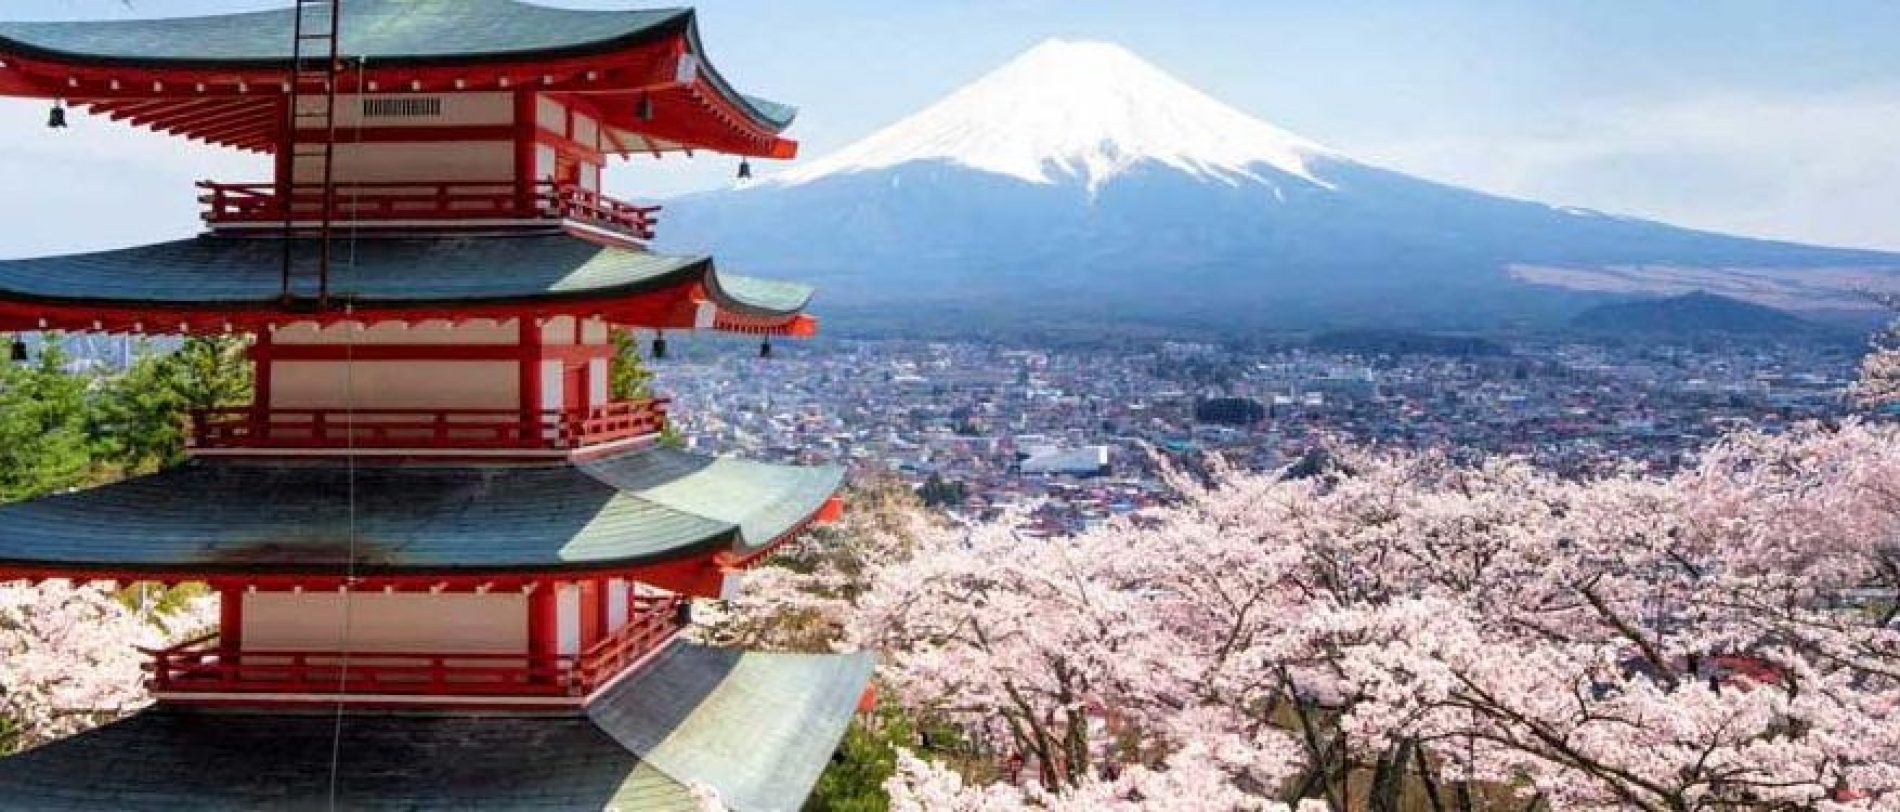 Voyage au Japon : comment faire des économies ?